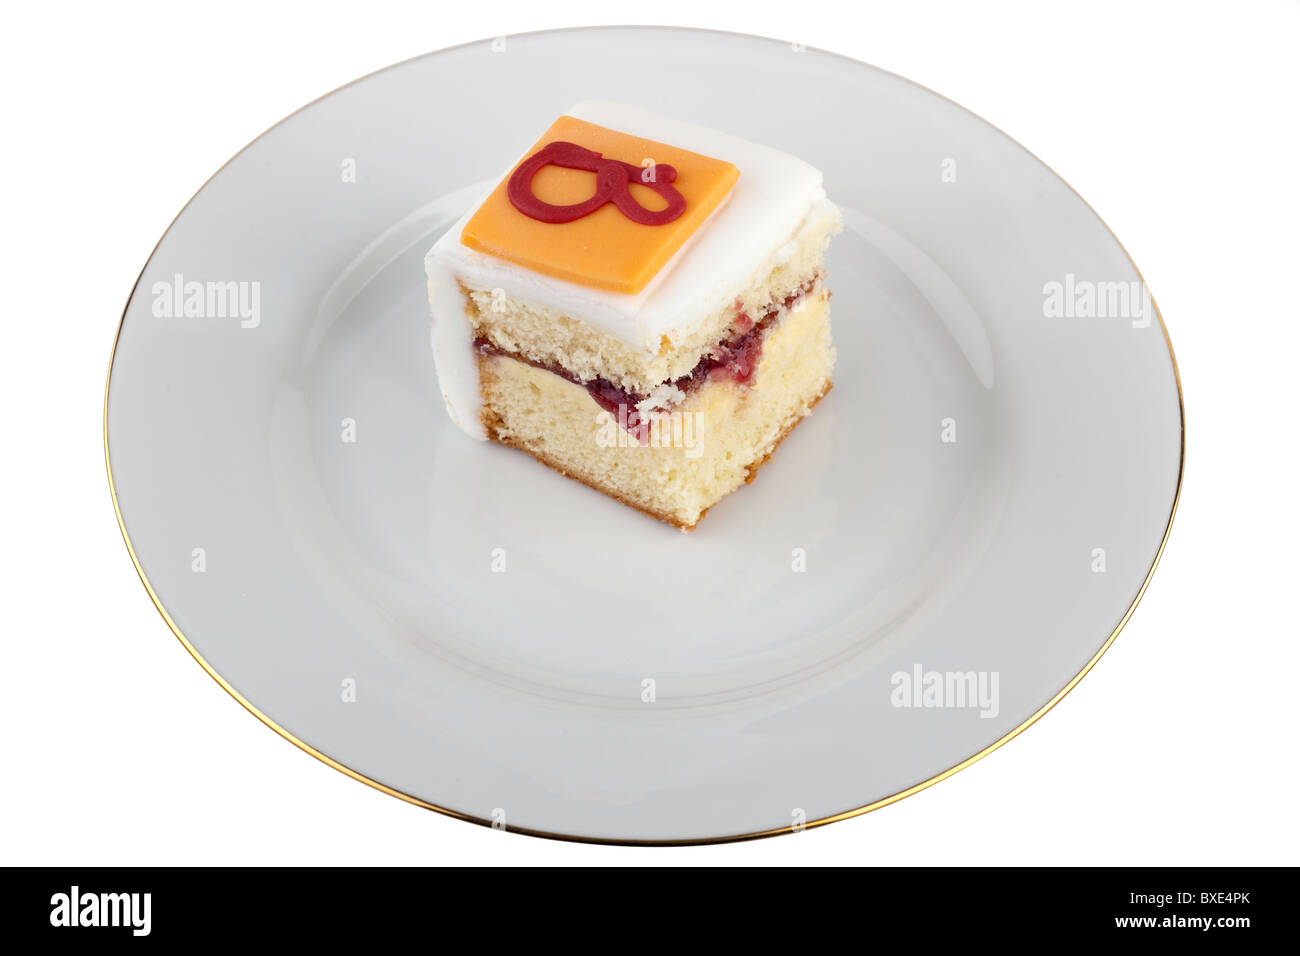 Porzione di Iced marmellata e crema riempito di pan di spagna su una piastra bianca Foto Stock